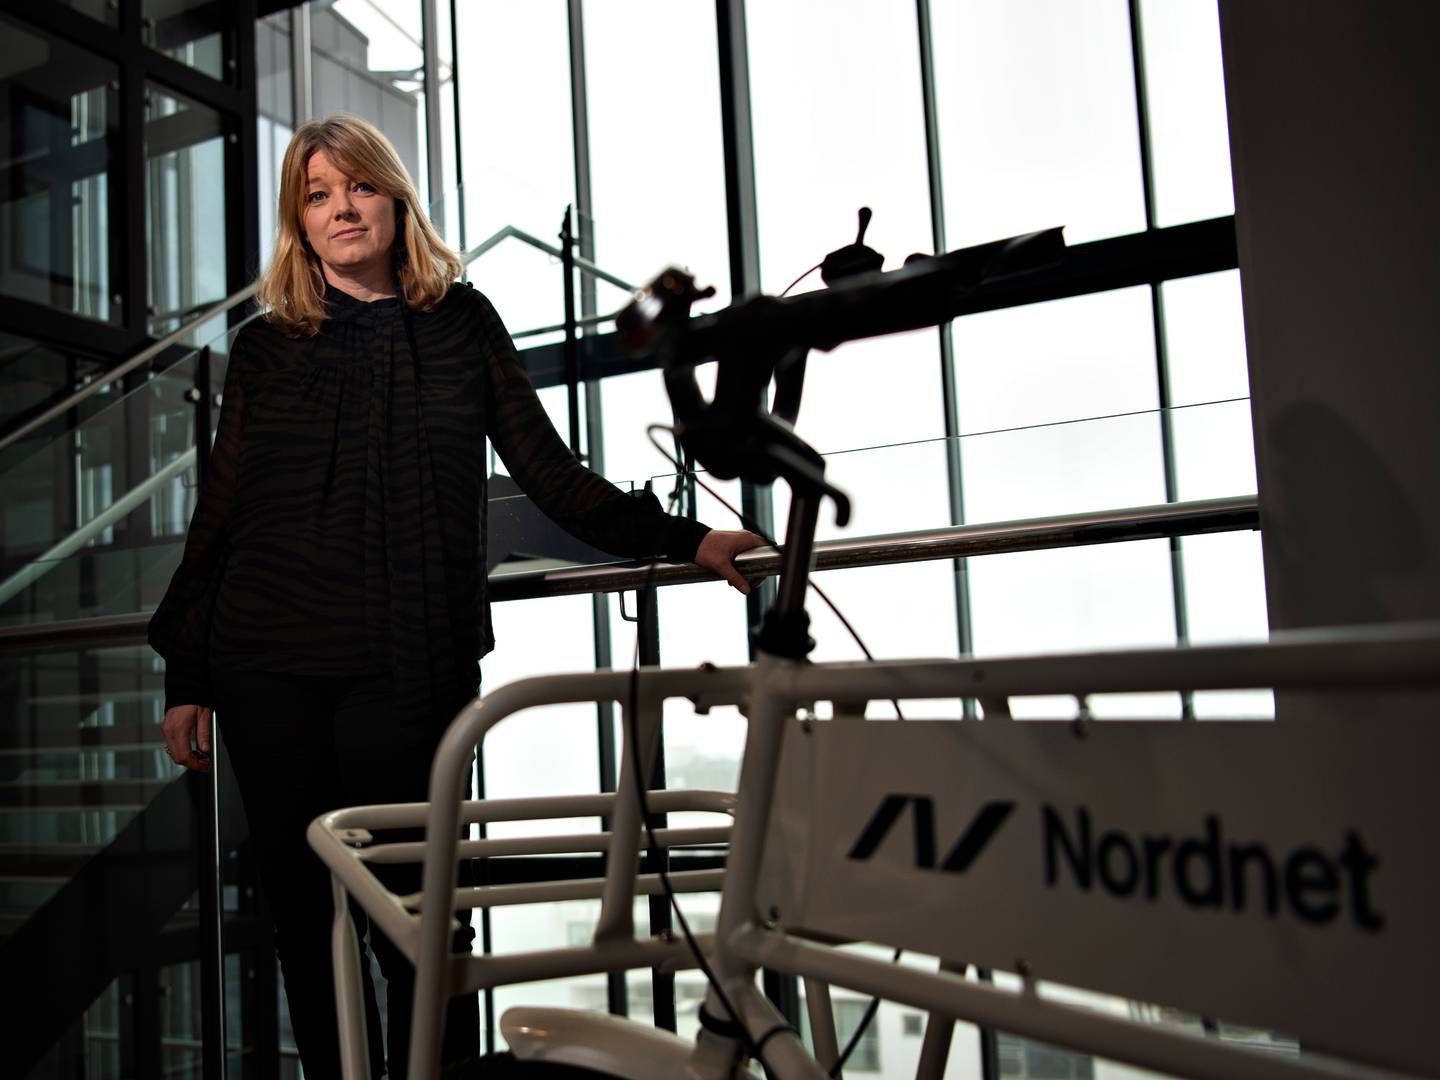 Anne Buchardt stopper som landechef for Nordnet i Danmark senere på ugen og afløses af Brian Buus Madsen, der bliver fungerende landechef. | Photo: Brian Karmark